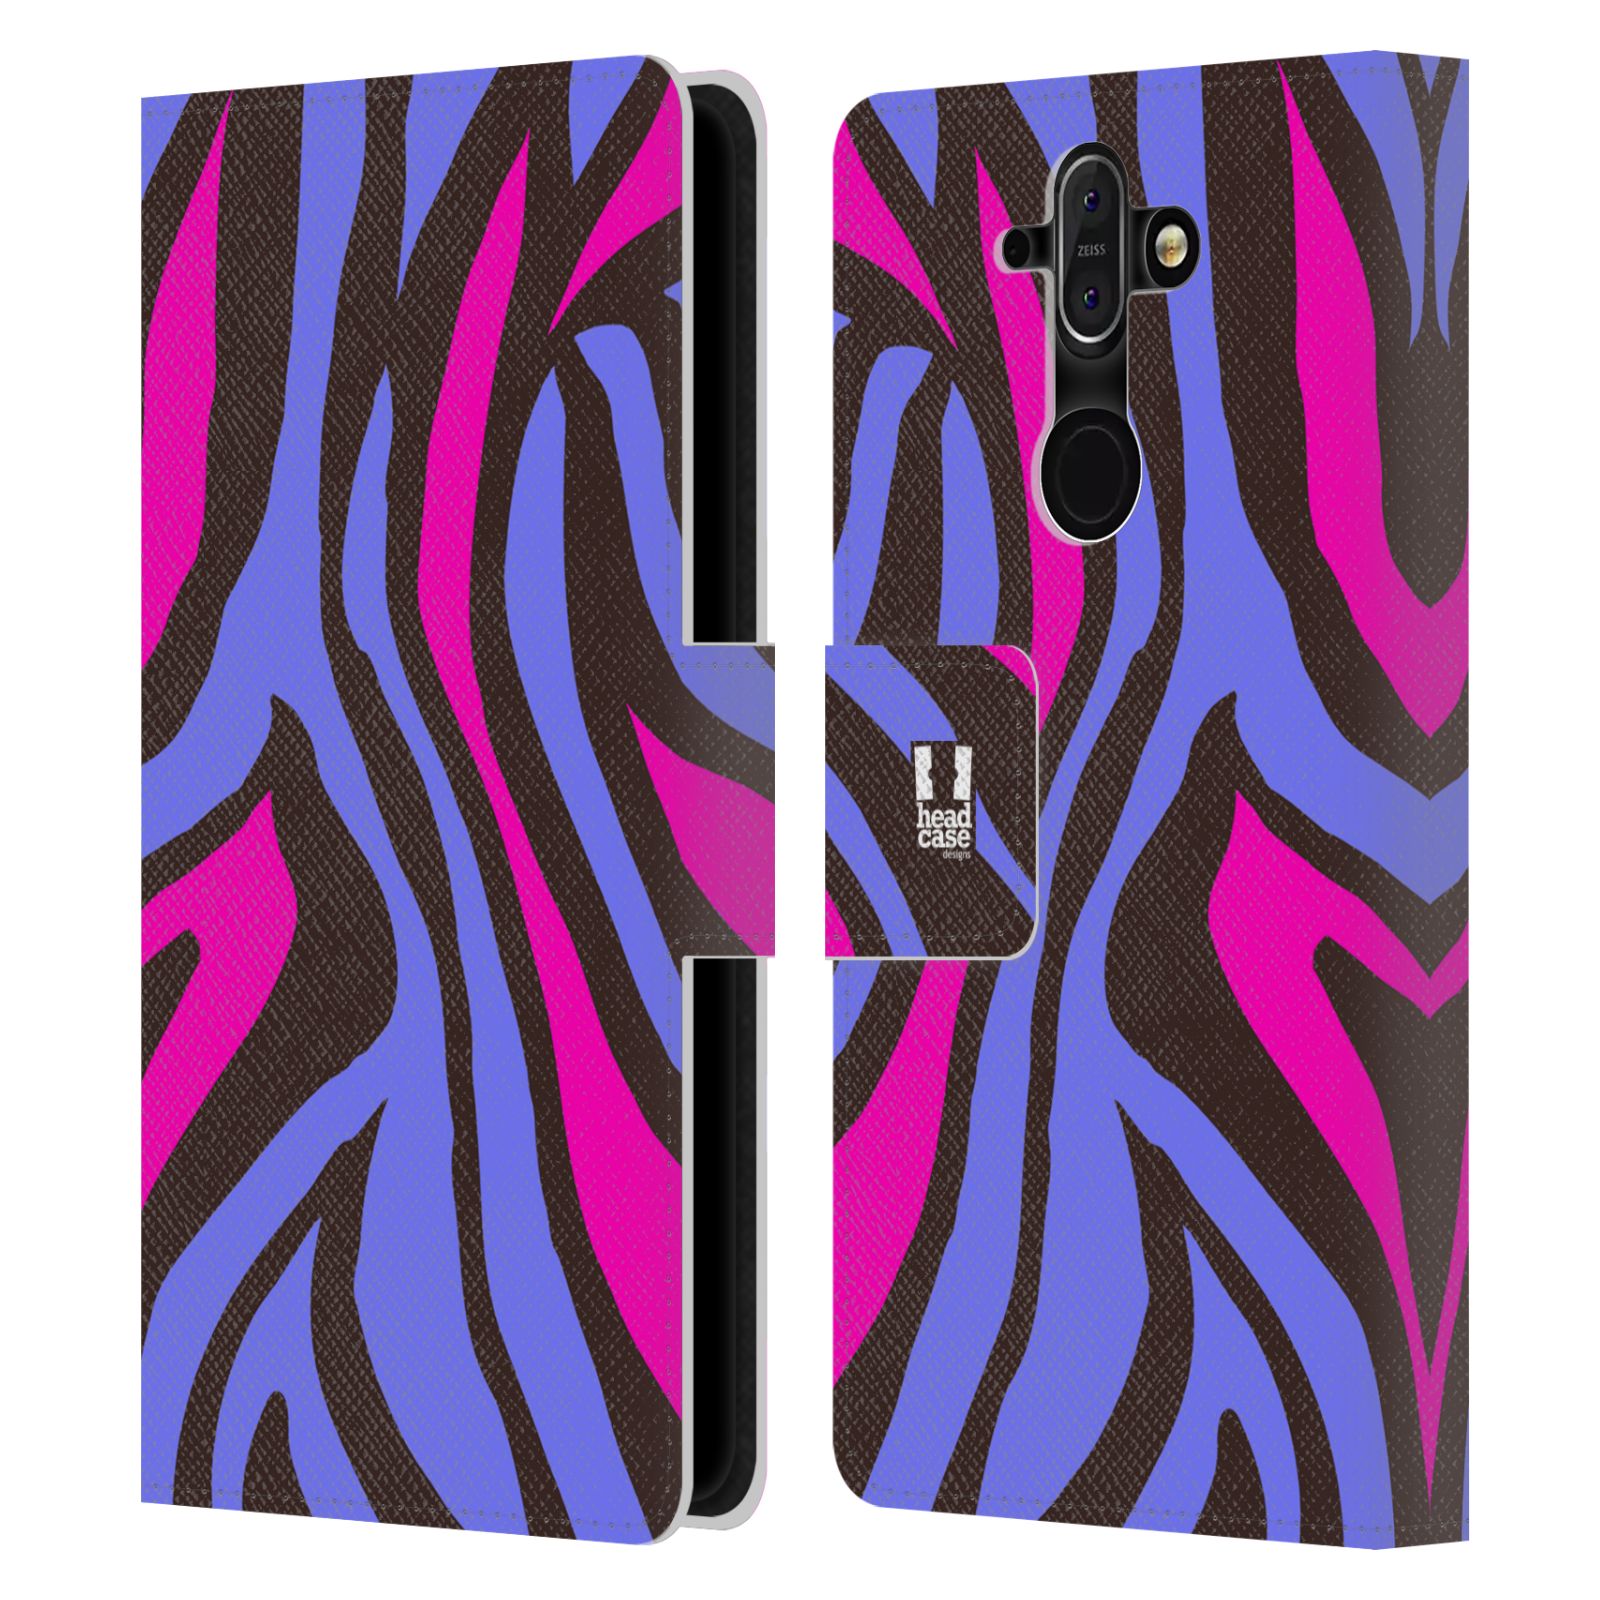 Pouzdro pro mobil Nokia 8 Sirocco - Divoký vzor zvíře fialová, růžová